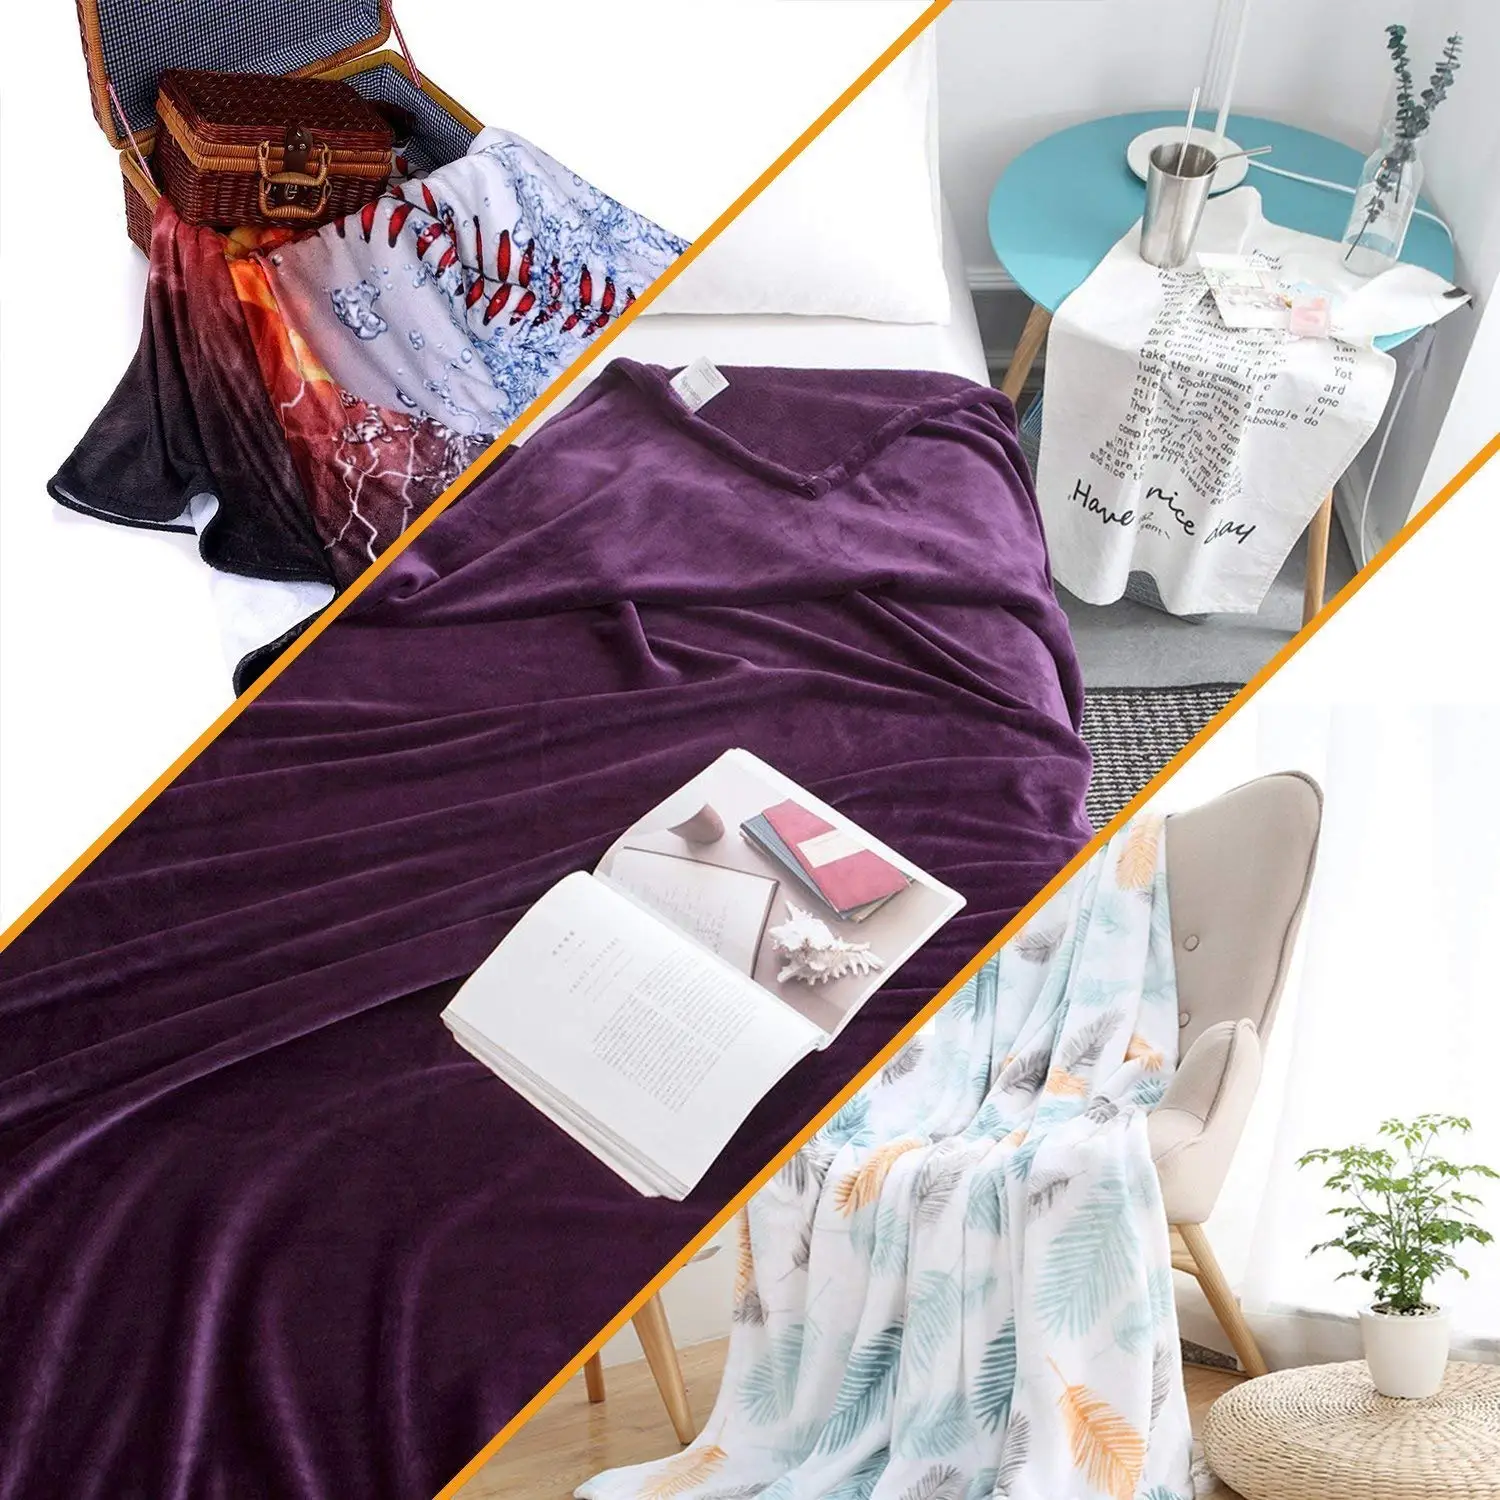 Одеяло с рисунком якоря, с мотивами якоря, с брызгами краски, морским монохромным дизайном, прямоугольное одеяло